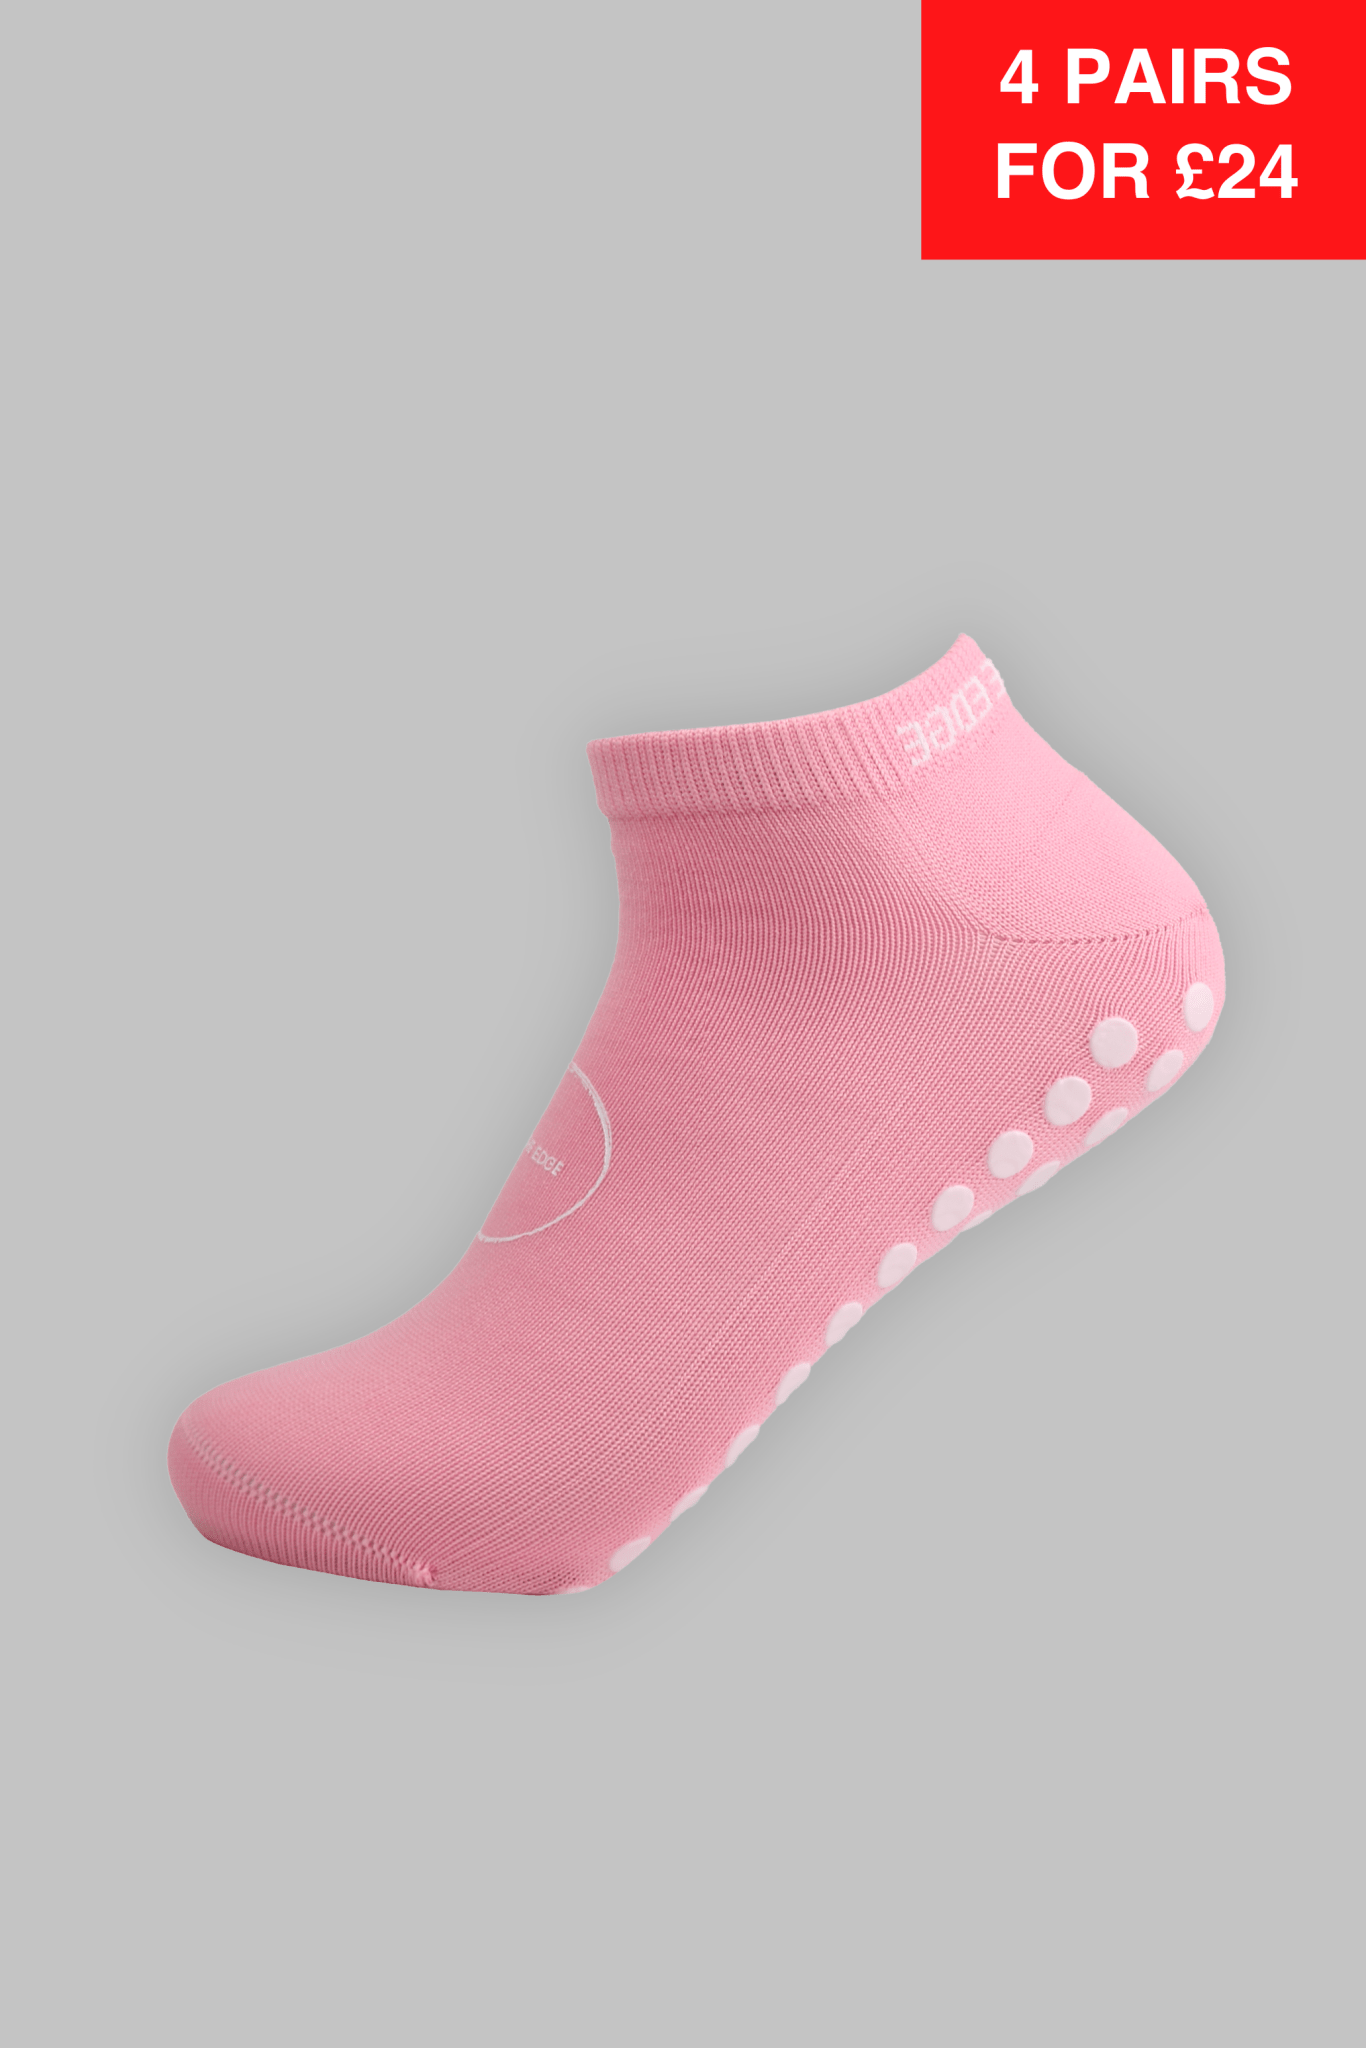 Ankle Grip Socks - Pink - Gain The Edge EU